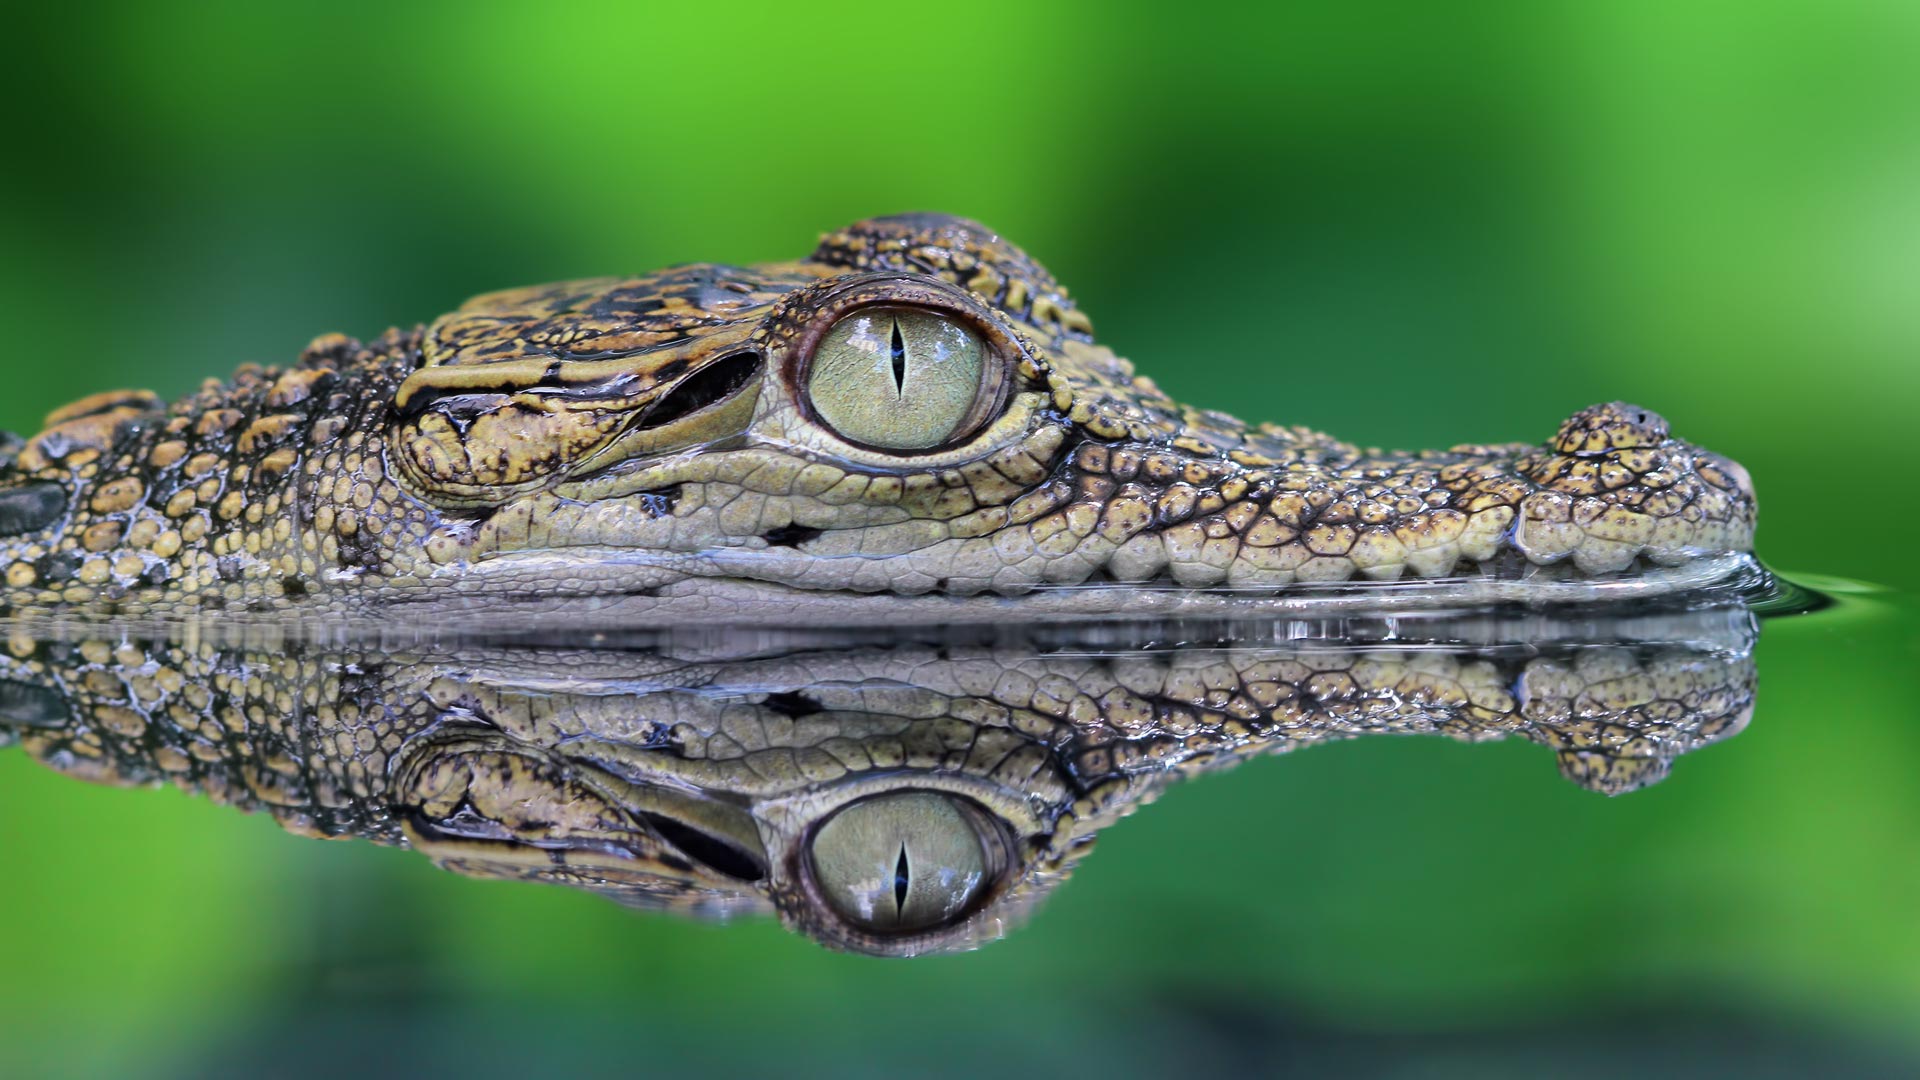 Diferencia entre caimanes y cocodrilos 